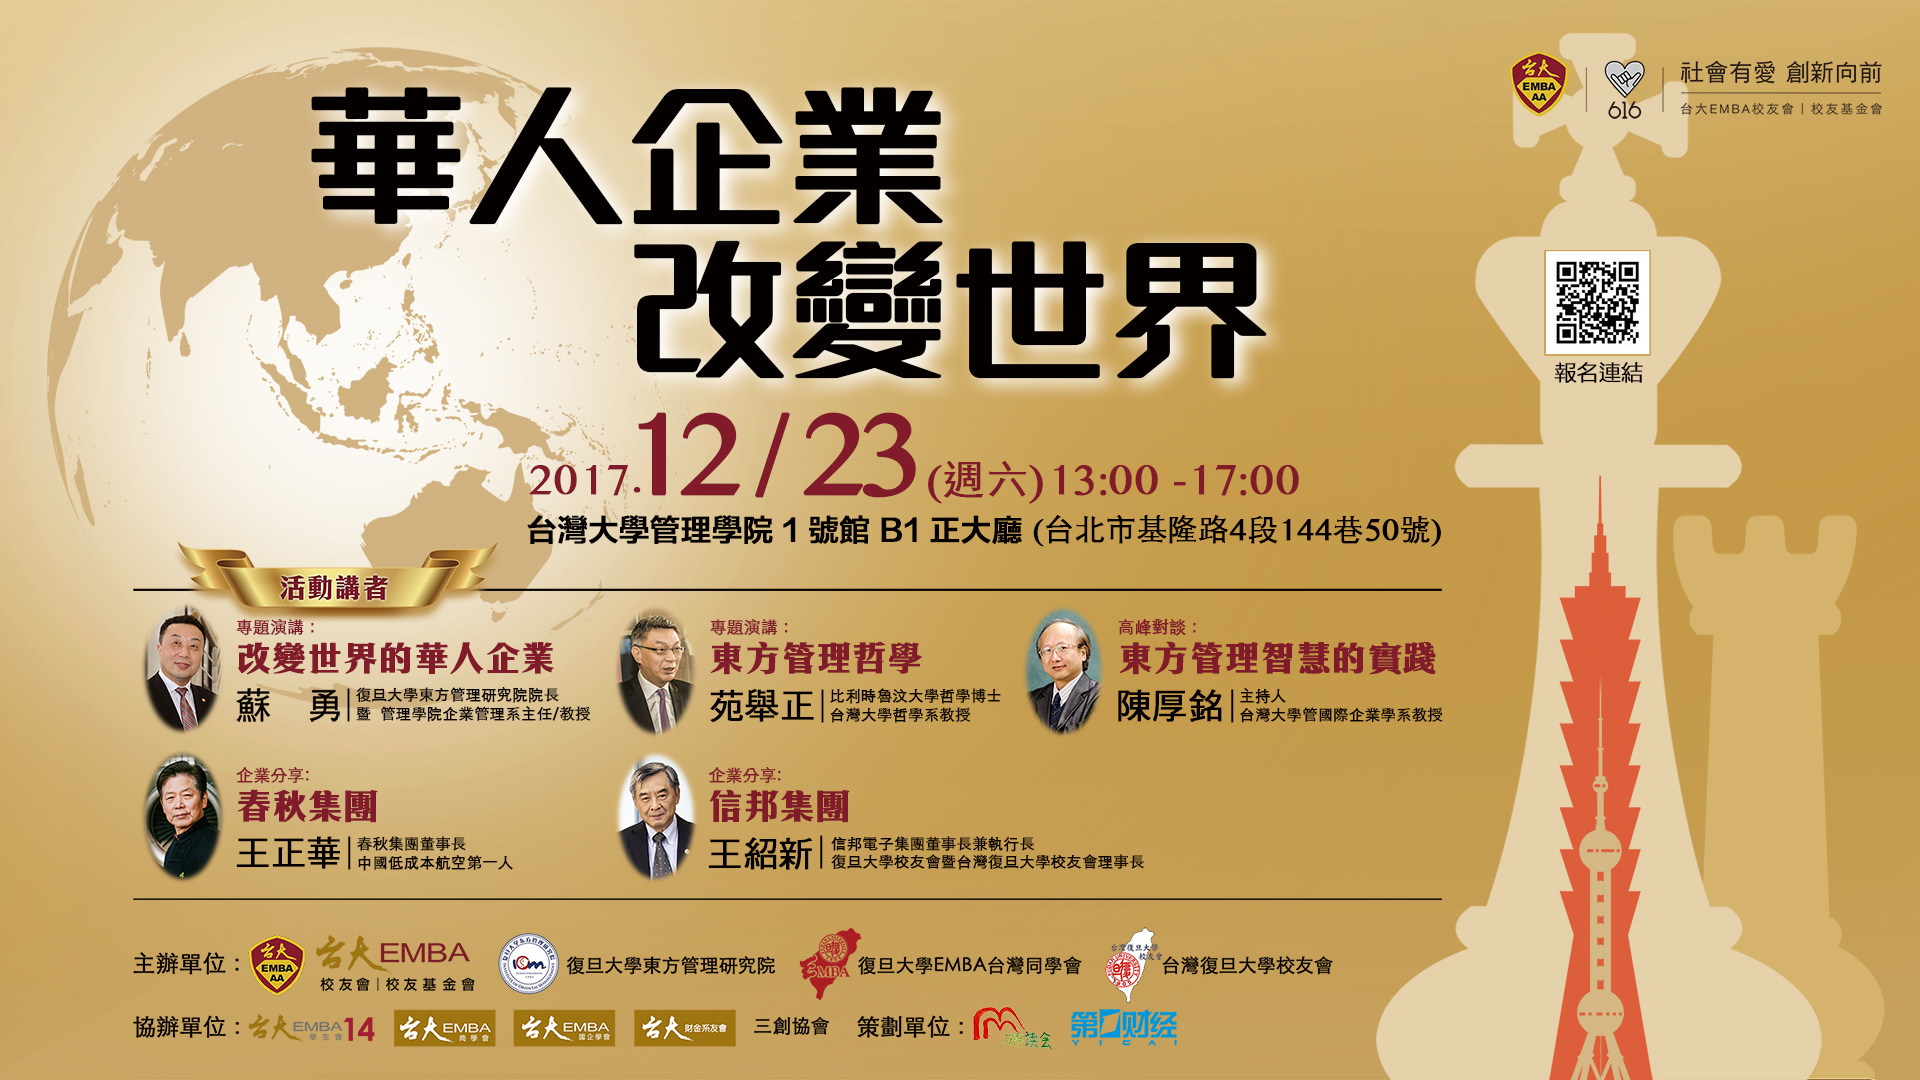 12/23（六）「華人企業改變世界暨海峽兩岸企業管理」高峰論壇